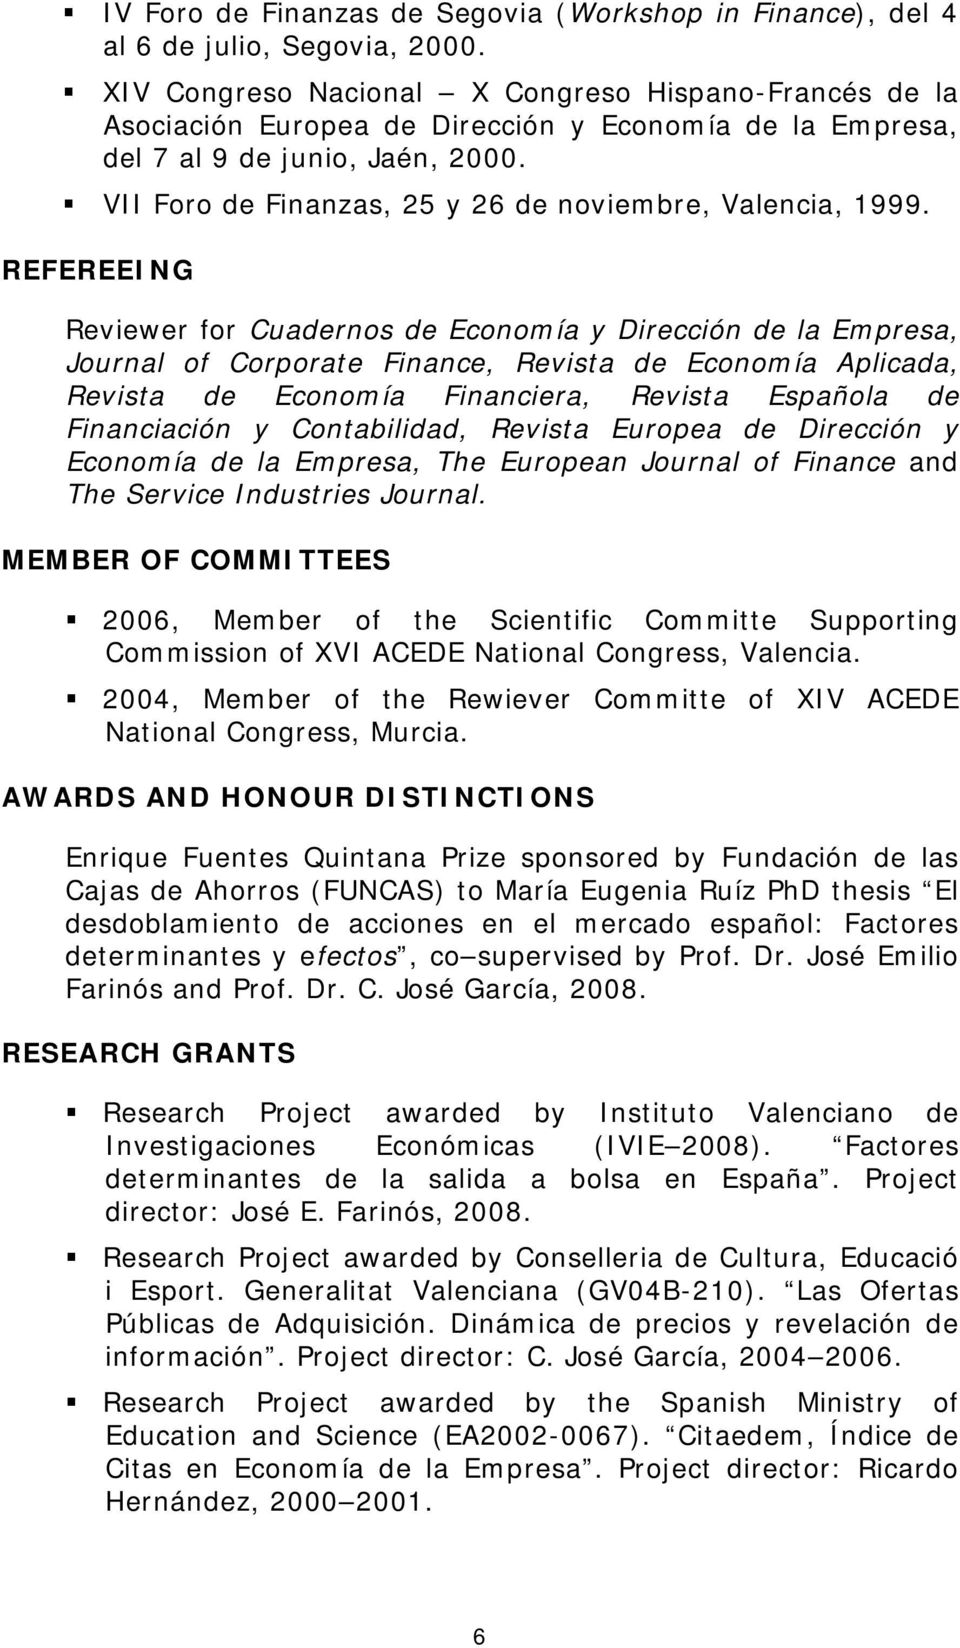 VII Foro de Finanzas, 25 y 26 de noviembre, Valencia, 1999.